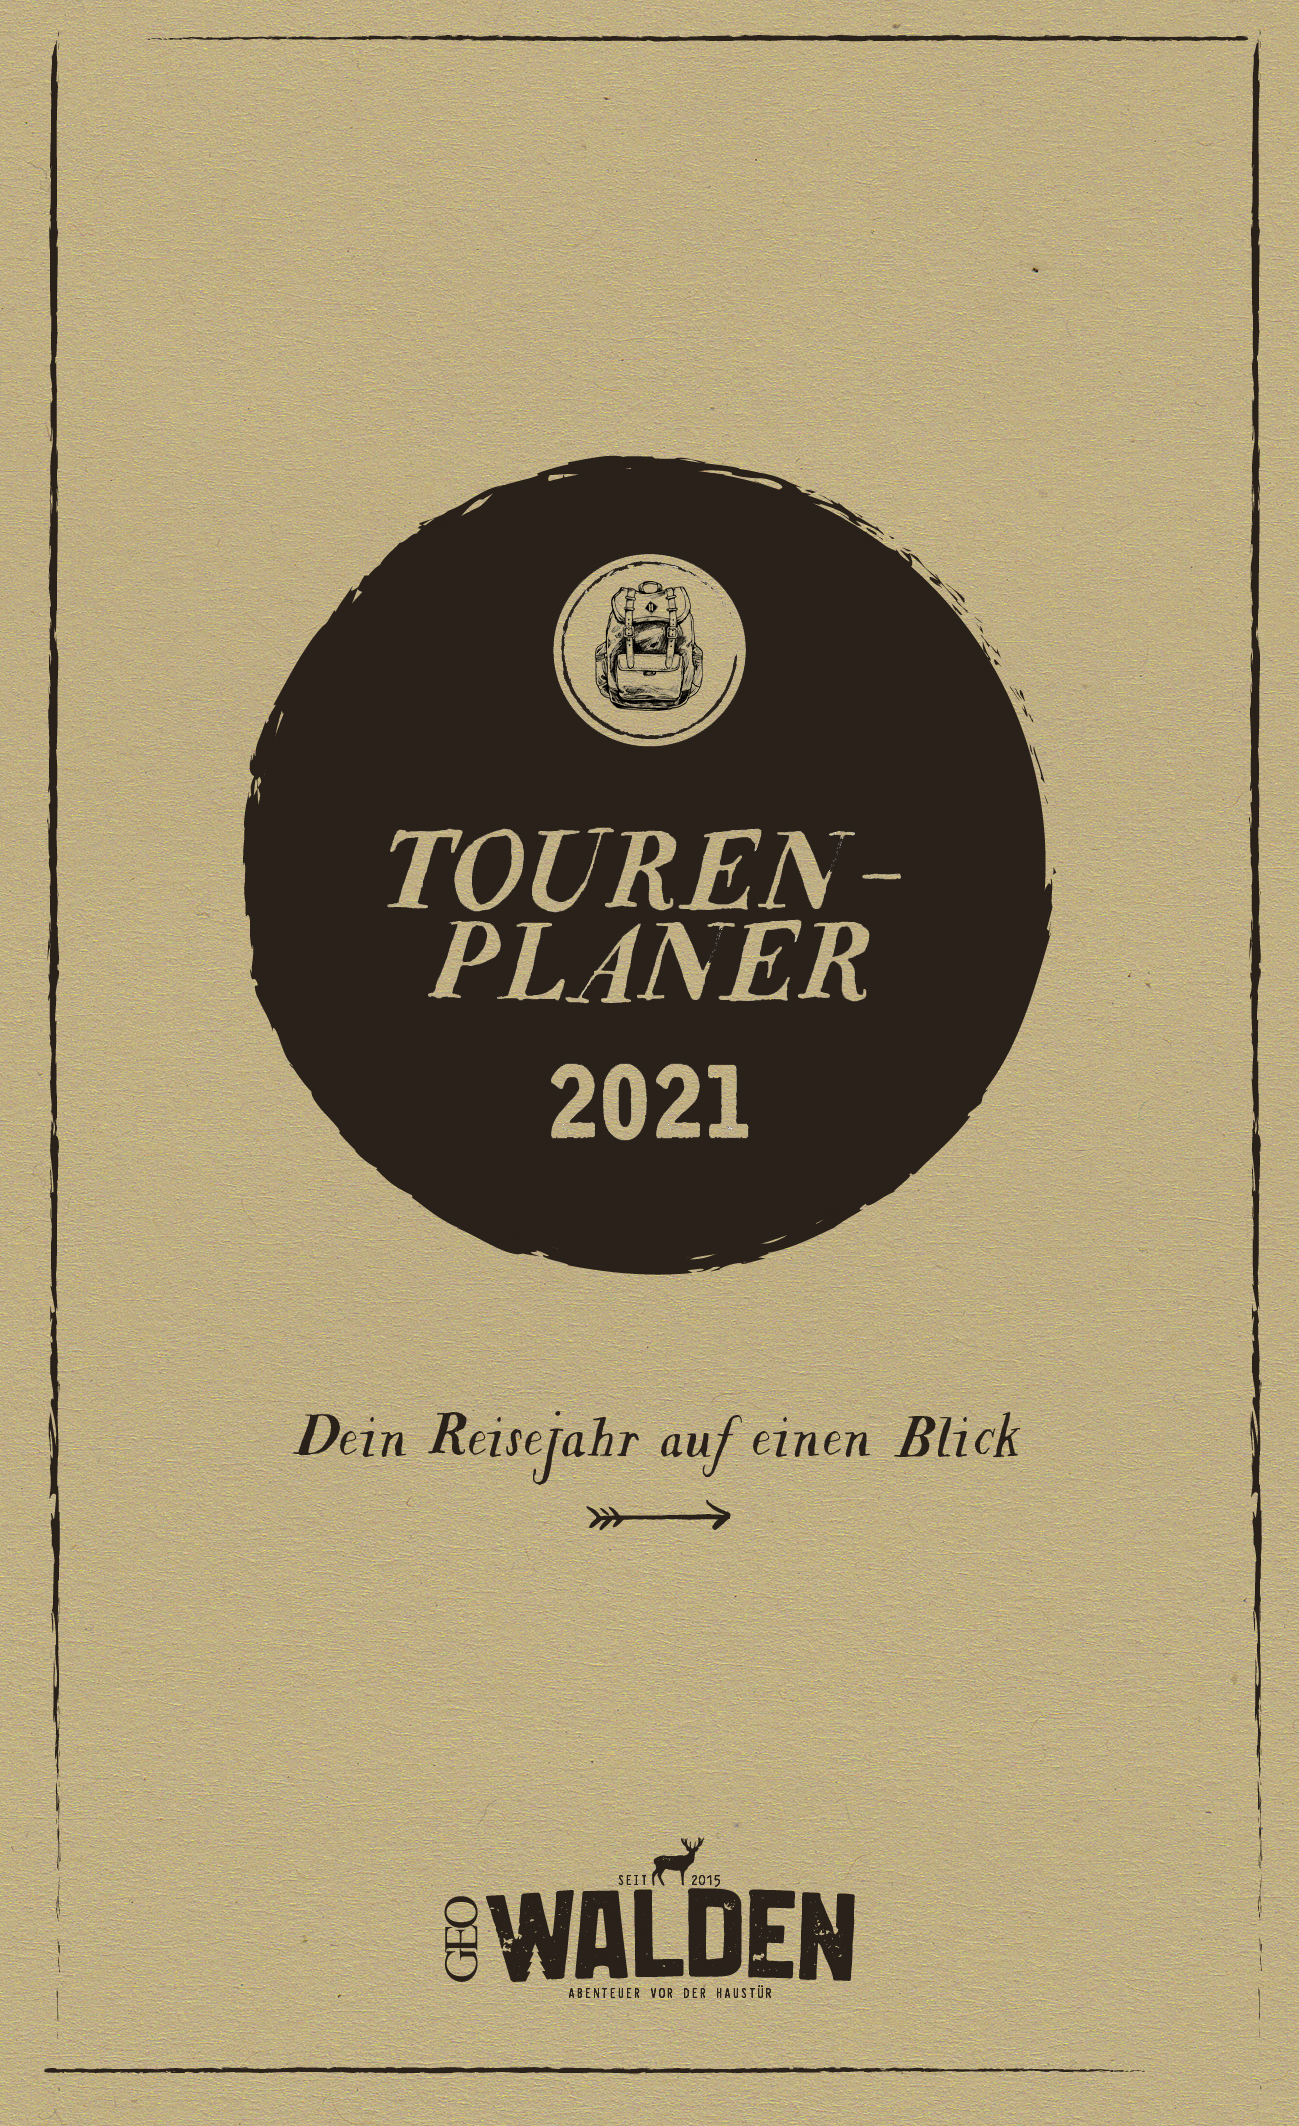 WALDEN 05/2020 Inkl. persönlichem Tourenplaner 2021